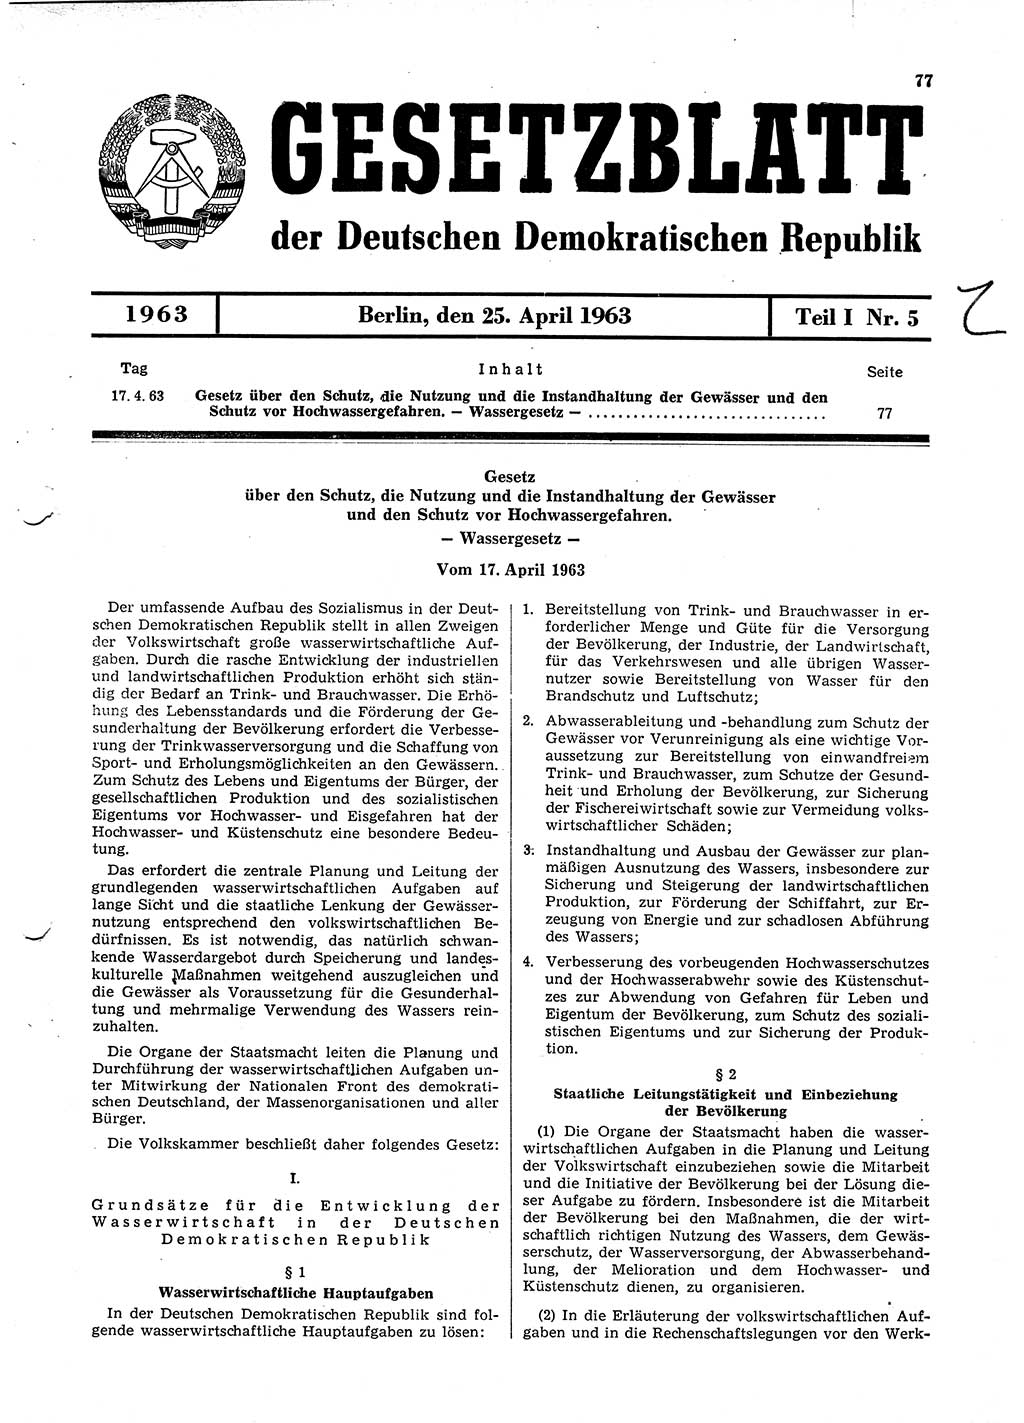 Gesetzblatt (GBl.) der Deutschen Demokratischen Republik (DDR) Teil Ⅰ 1963, Seite 77 (GBl. DDR Ⅰ 1963, S. 77)